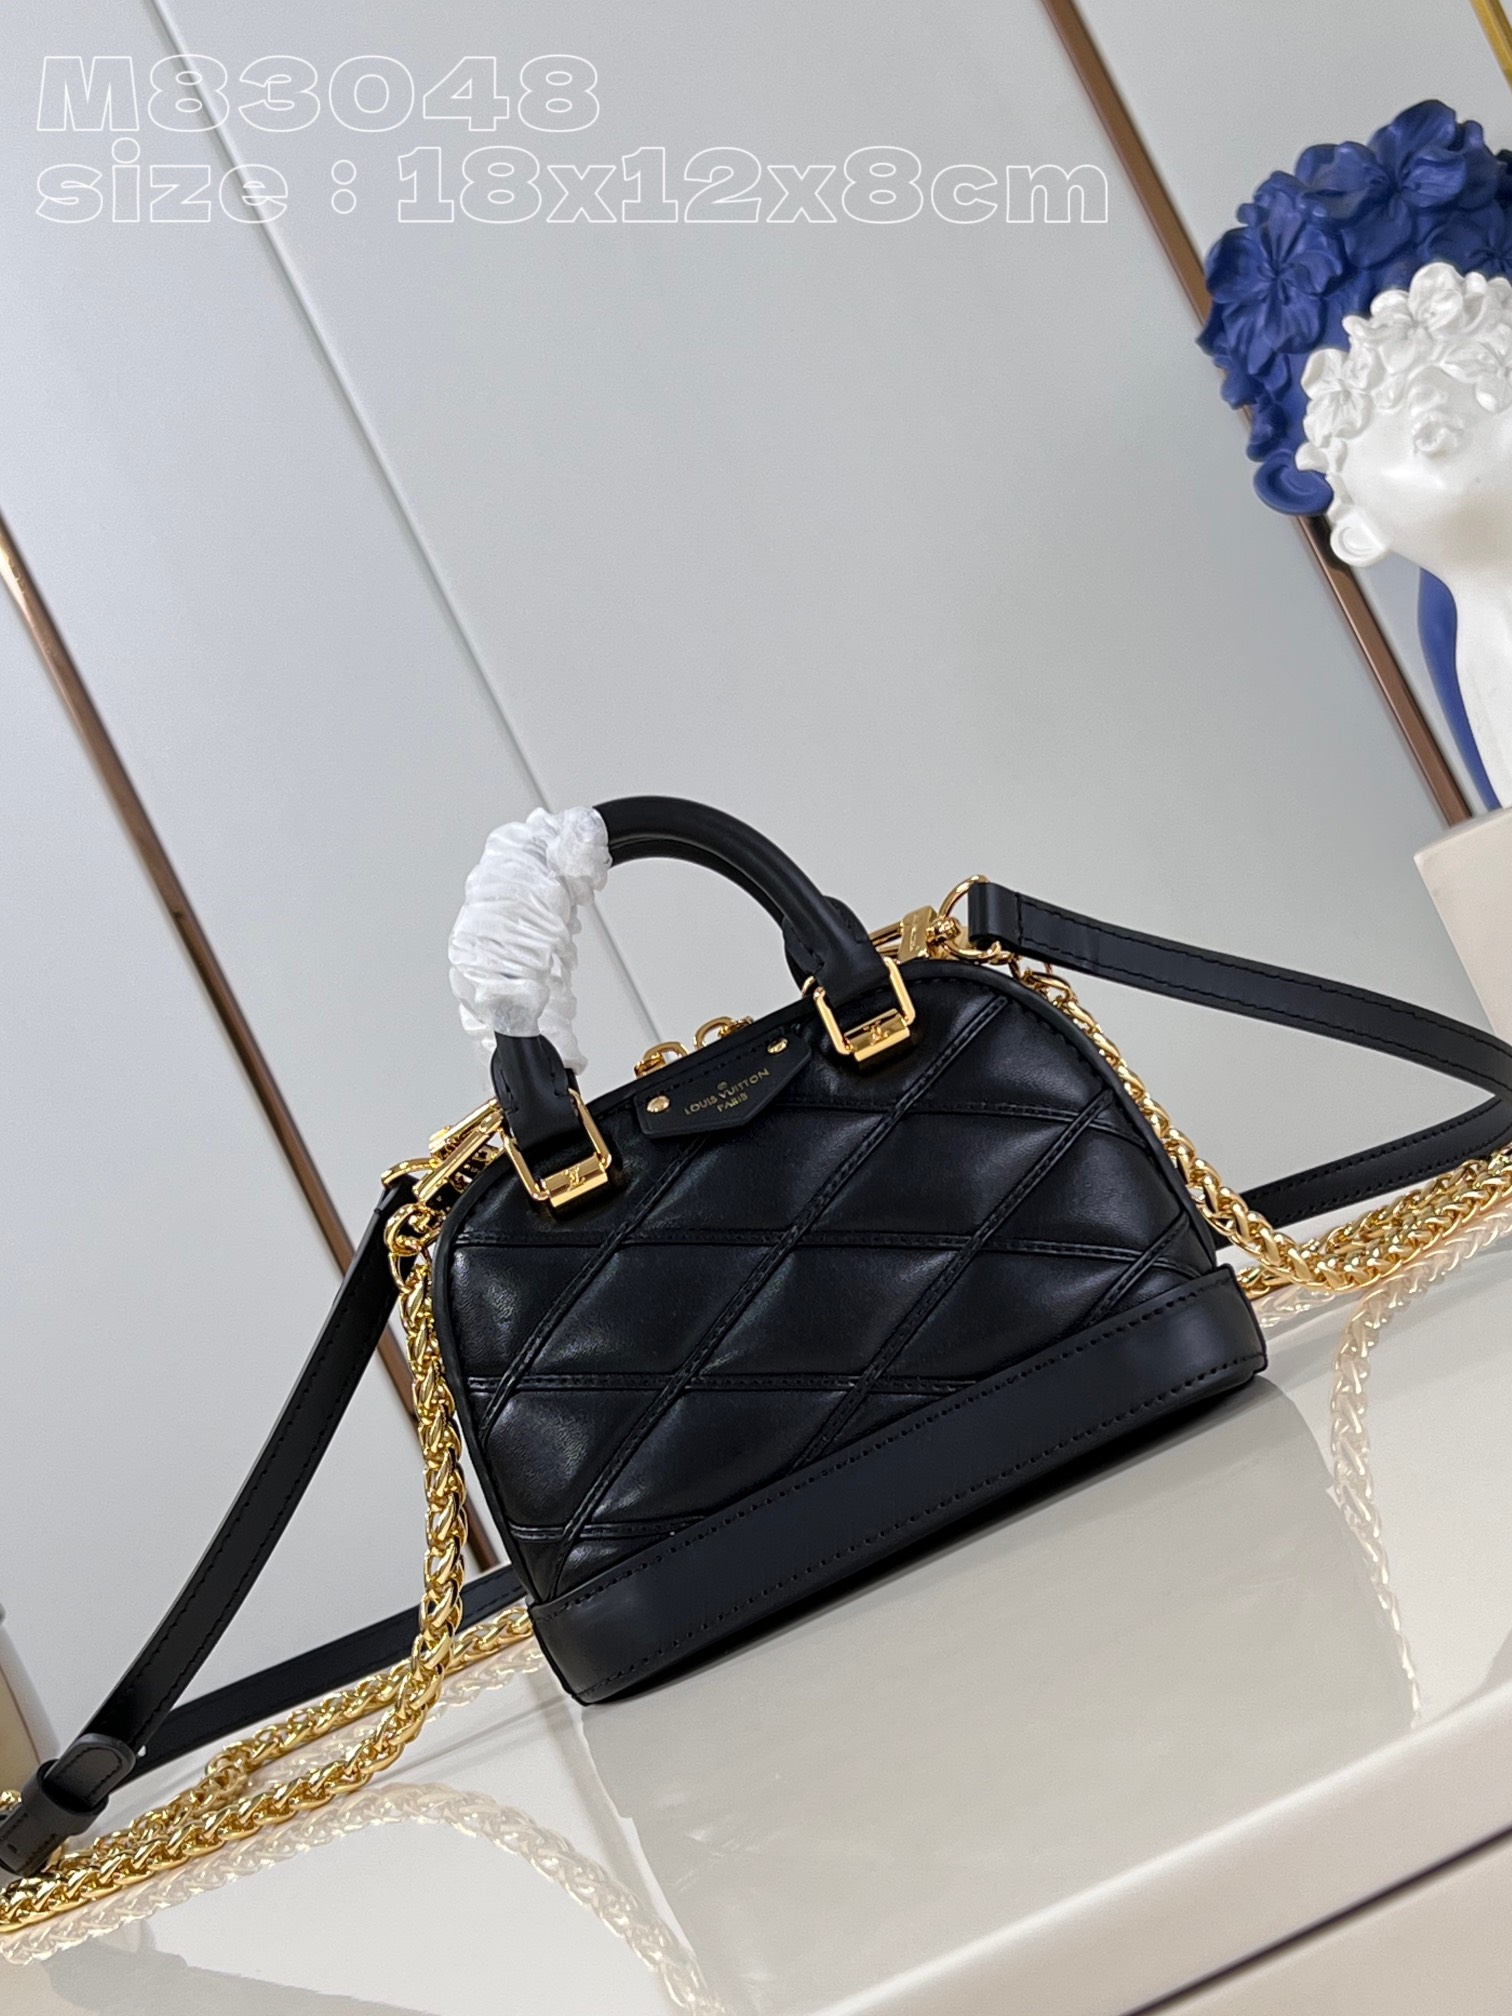 Louis Vuitton Bags Handbags Replcia Cheap
 Black Sheepskin Chains M83048